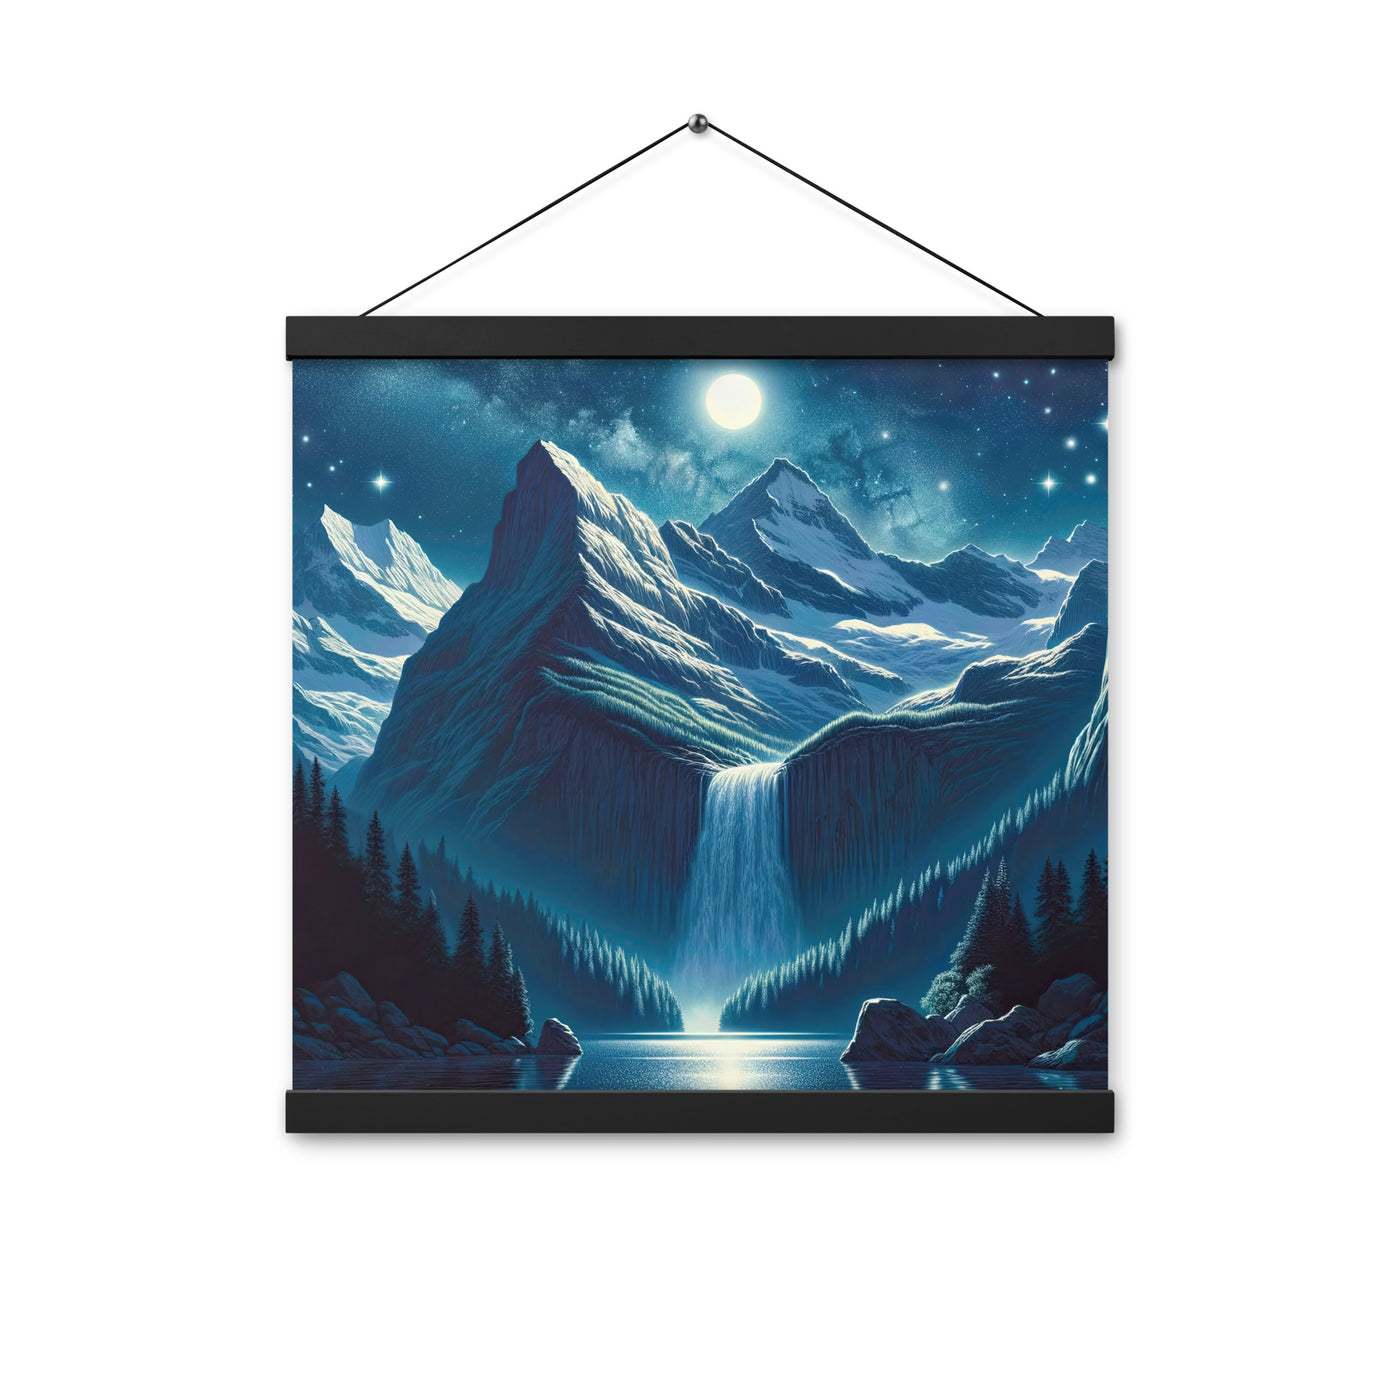 Legendäre Alpennacht, Mondlicht-Berge unter Sternenhimmel - Premium Poster mit Aufhängung berge xxx yyy zzz 40.6 x 40.6 cm